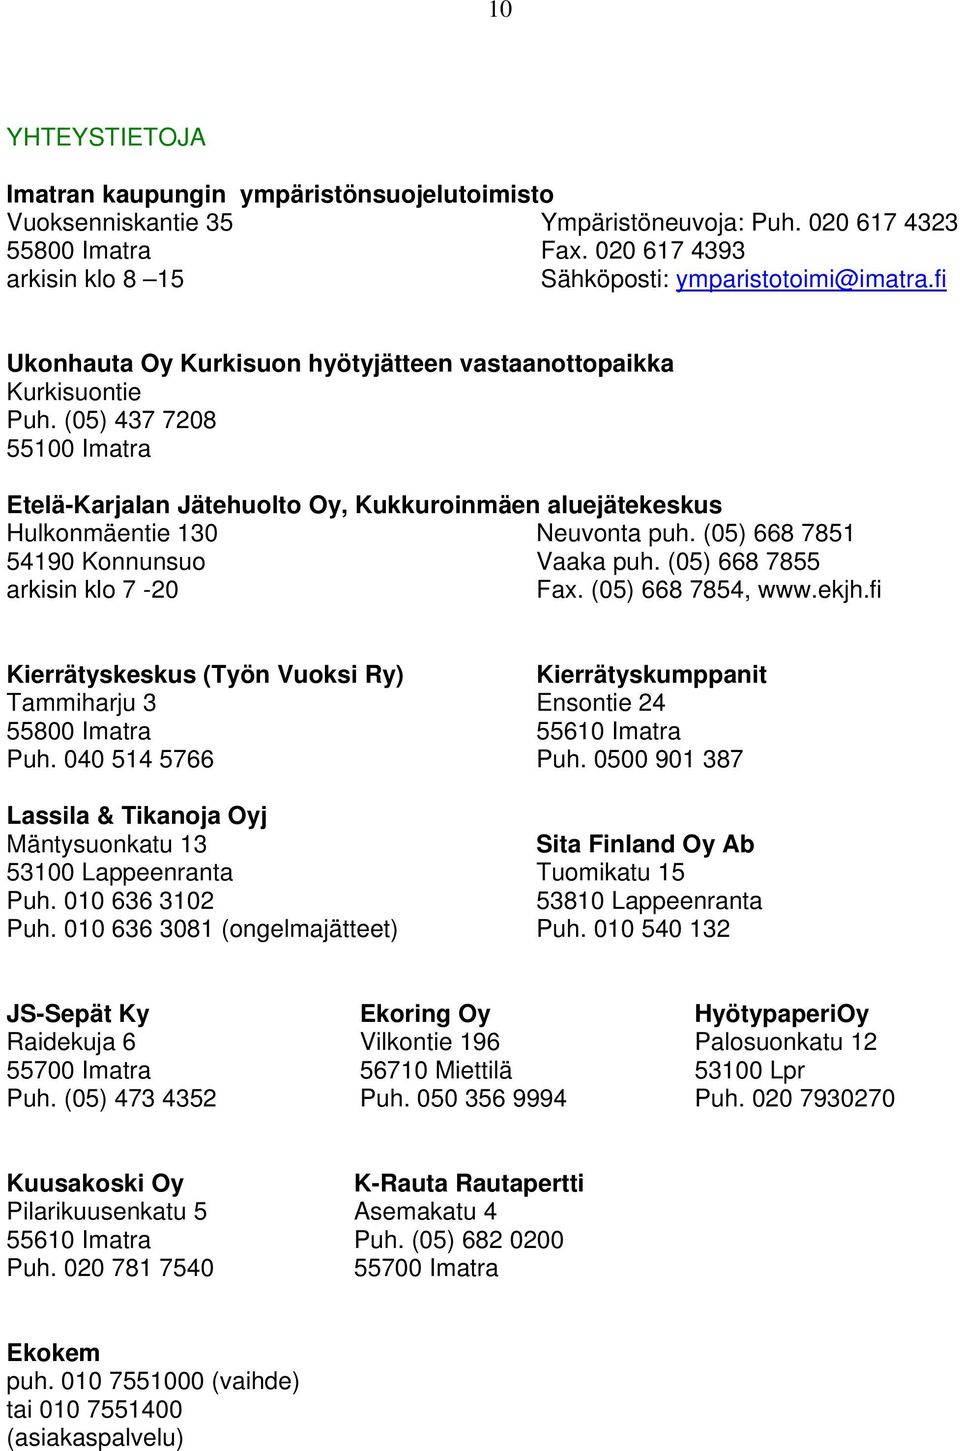 (05) 668 7851 54190 Konnunsuo Vaaka puh. (05) 668 7855 arkisin klo 7-20 Fax. (05) 668 7854, www.ekjh.fi Kierrätyskeskus (Työn Vuoksi Ry) Tammiharju 3 55800 Imatra Puh.